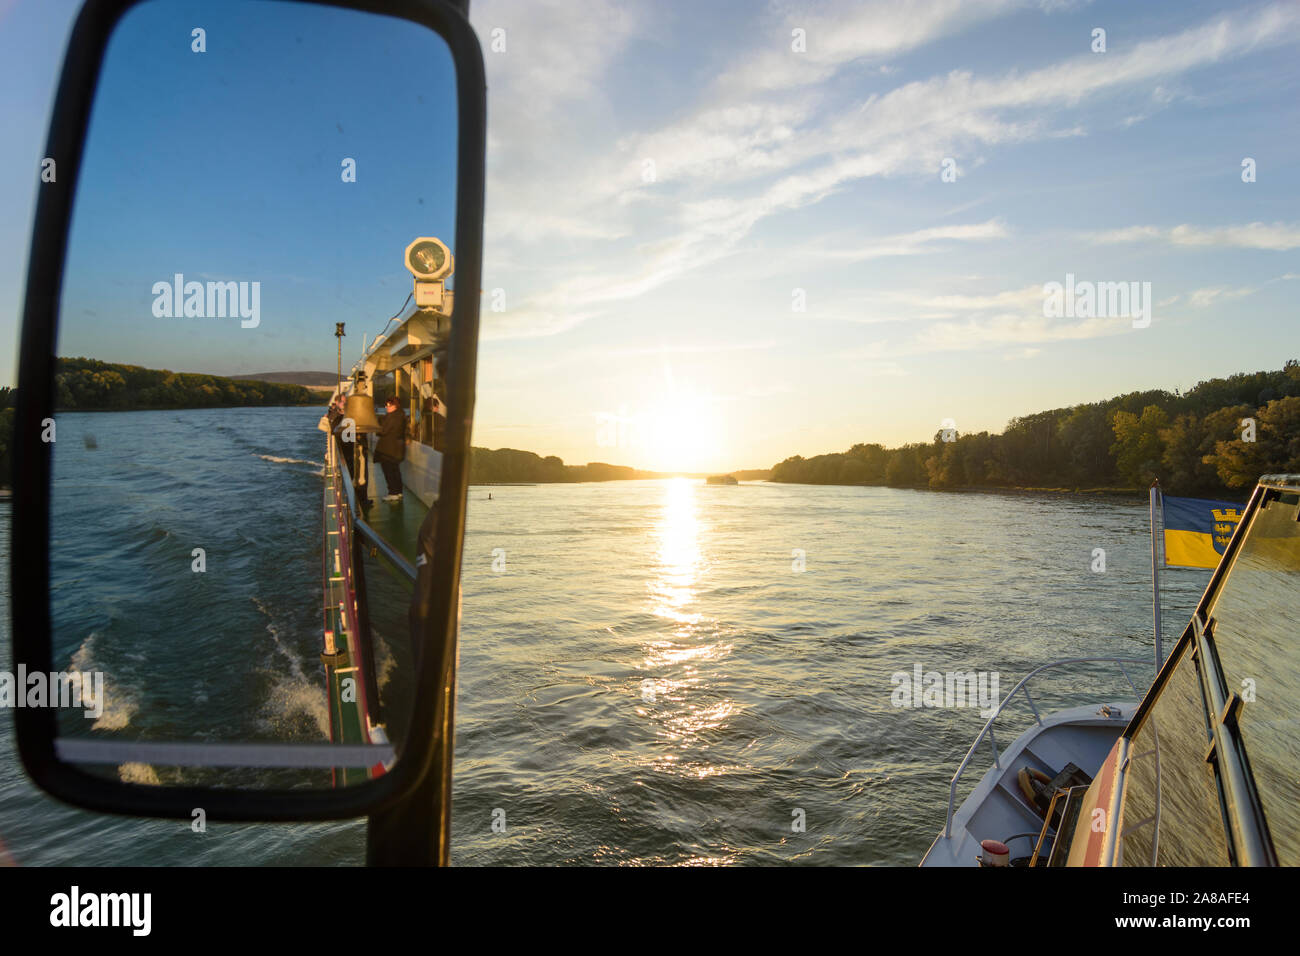 Nationalpark Donauauen, le Parc National Danube-Auen : rivière Donau (Danube), navire à passagers, un navire bell, mirrow, coucher de soleil en Autriche, Niederösterreich, Banque D'Images